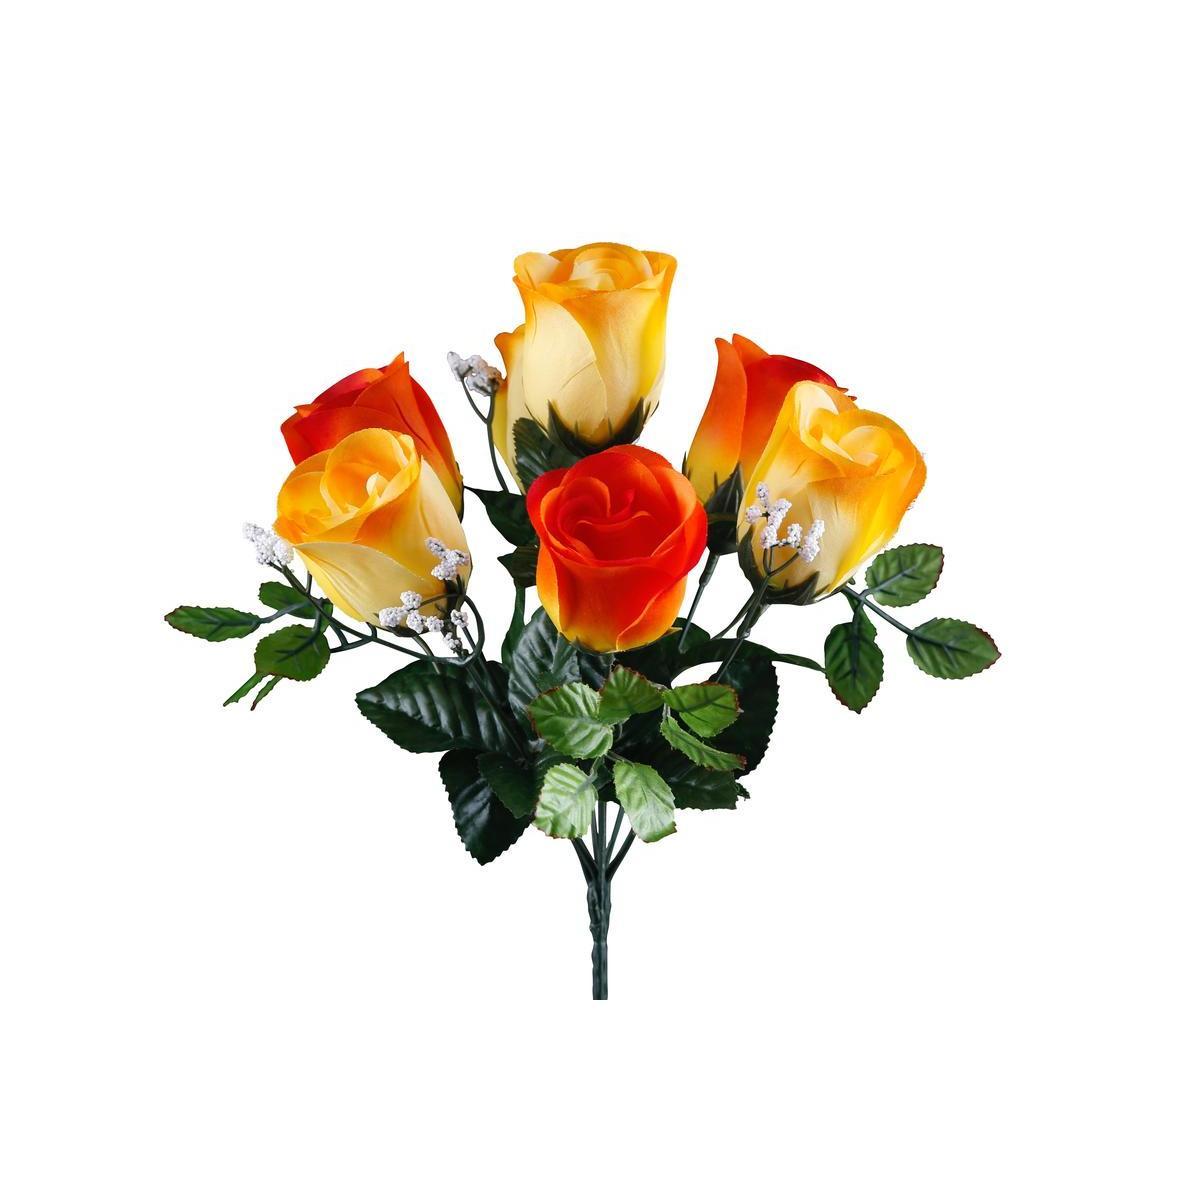 Bouquet de roses et de gypsos - 4 assortiments